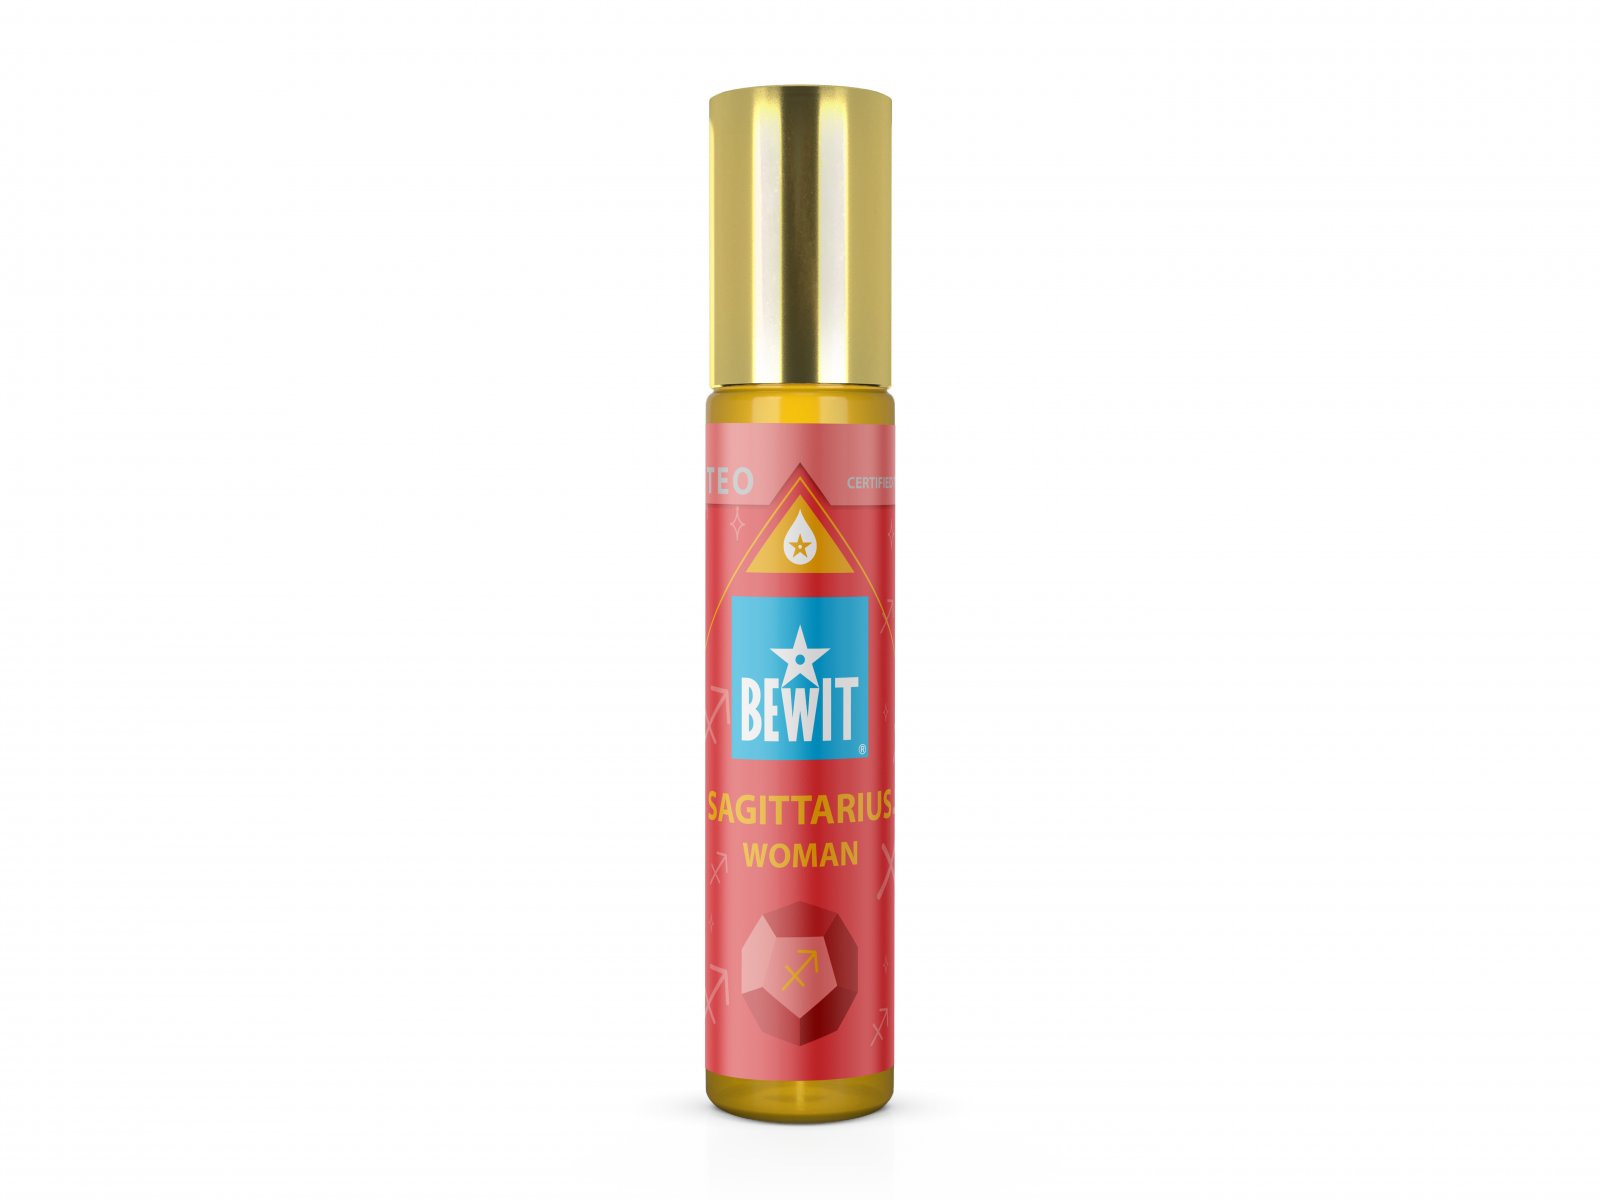 BEWIT® WOMAN SAGITTARIUS (THE CENTAUR) - Women's roll-on oil perfume